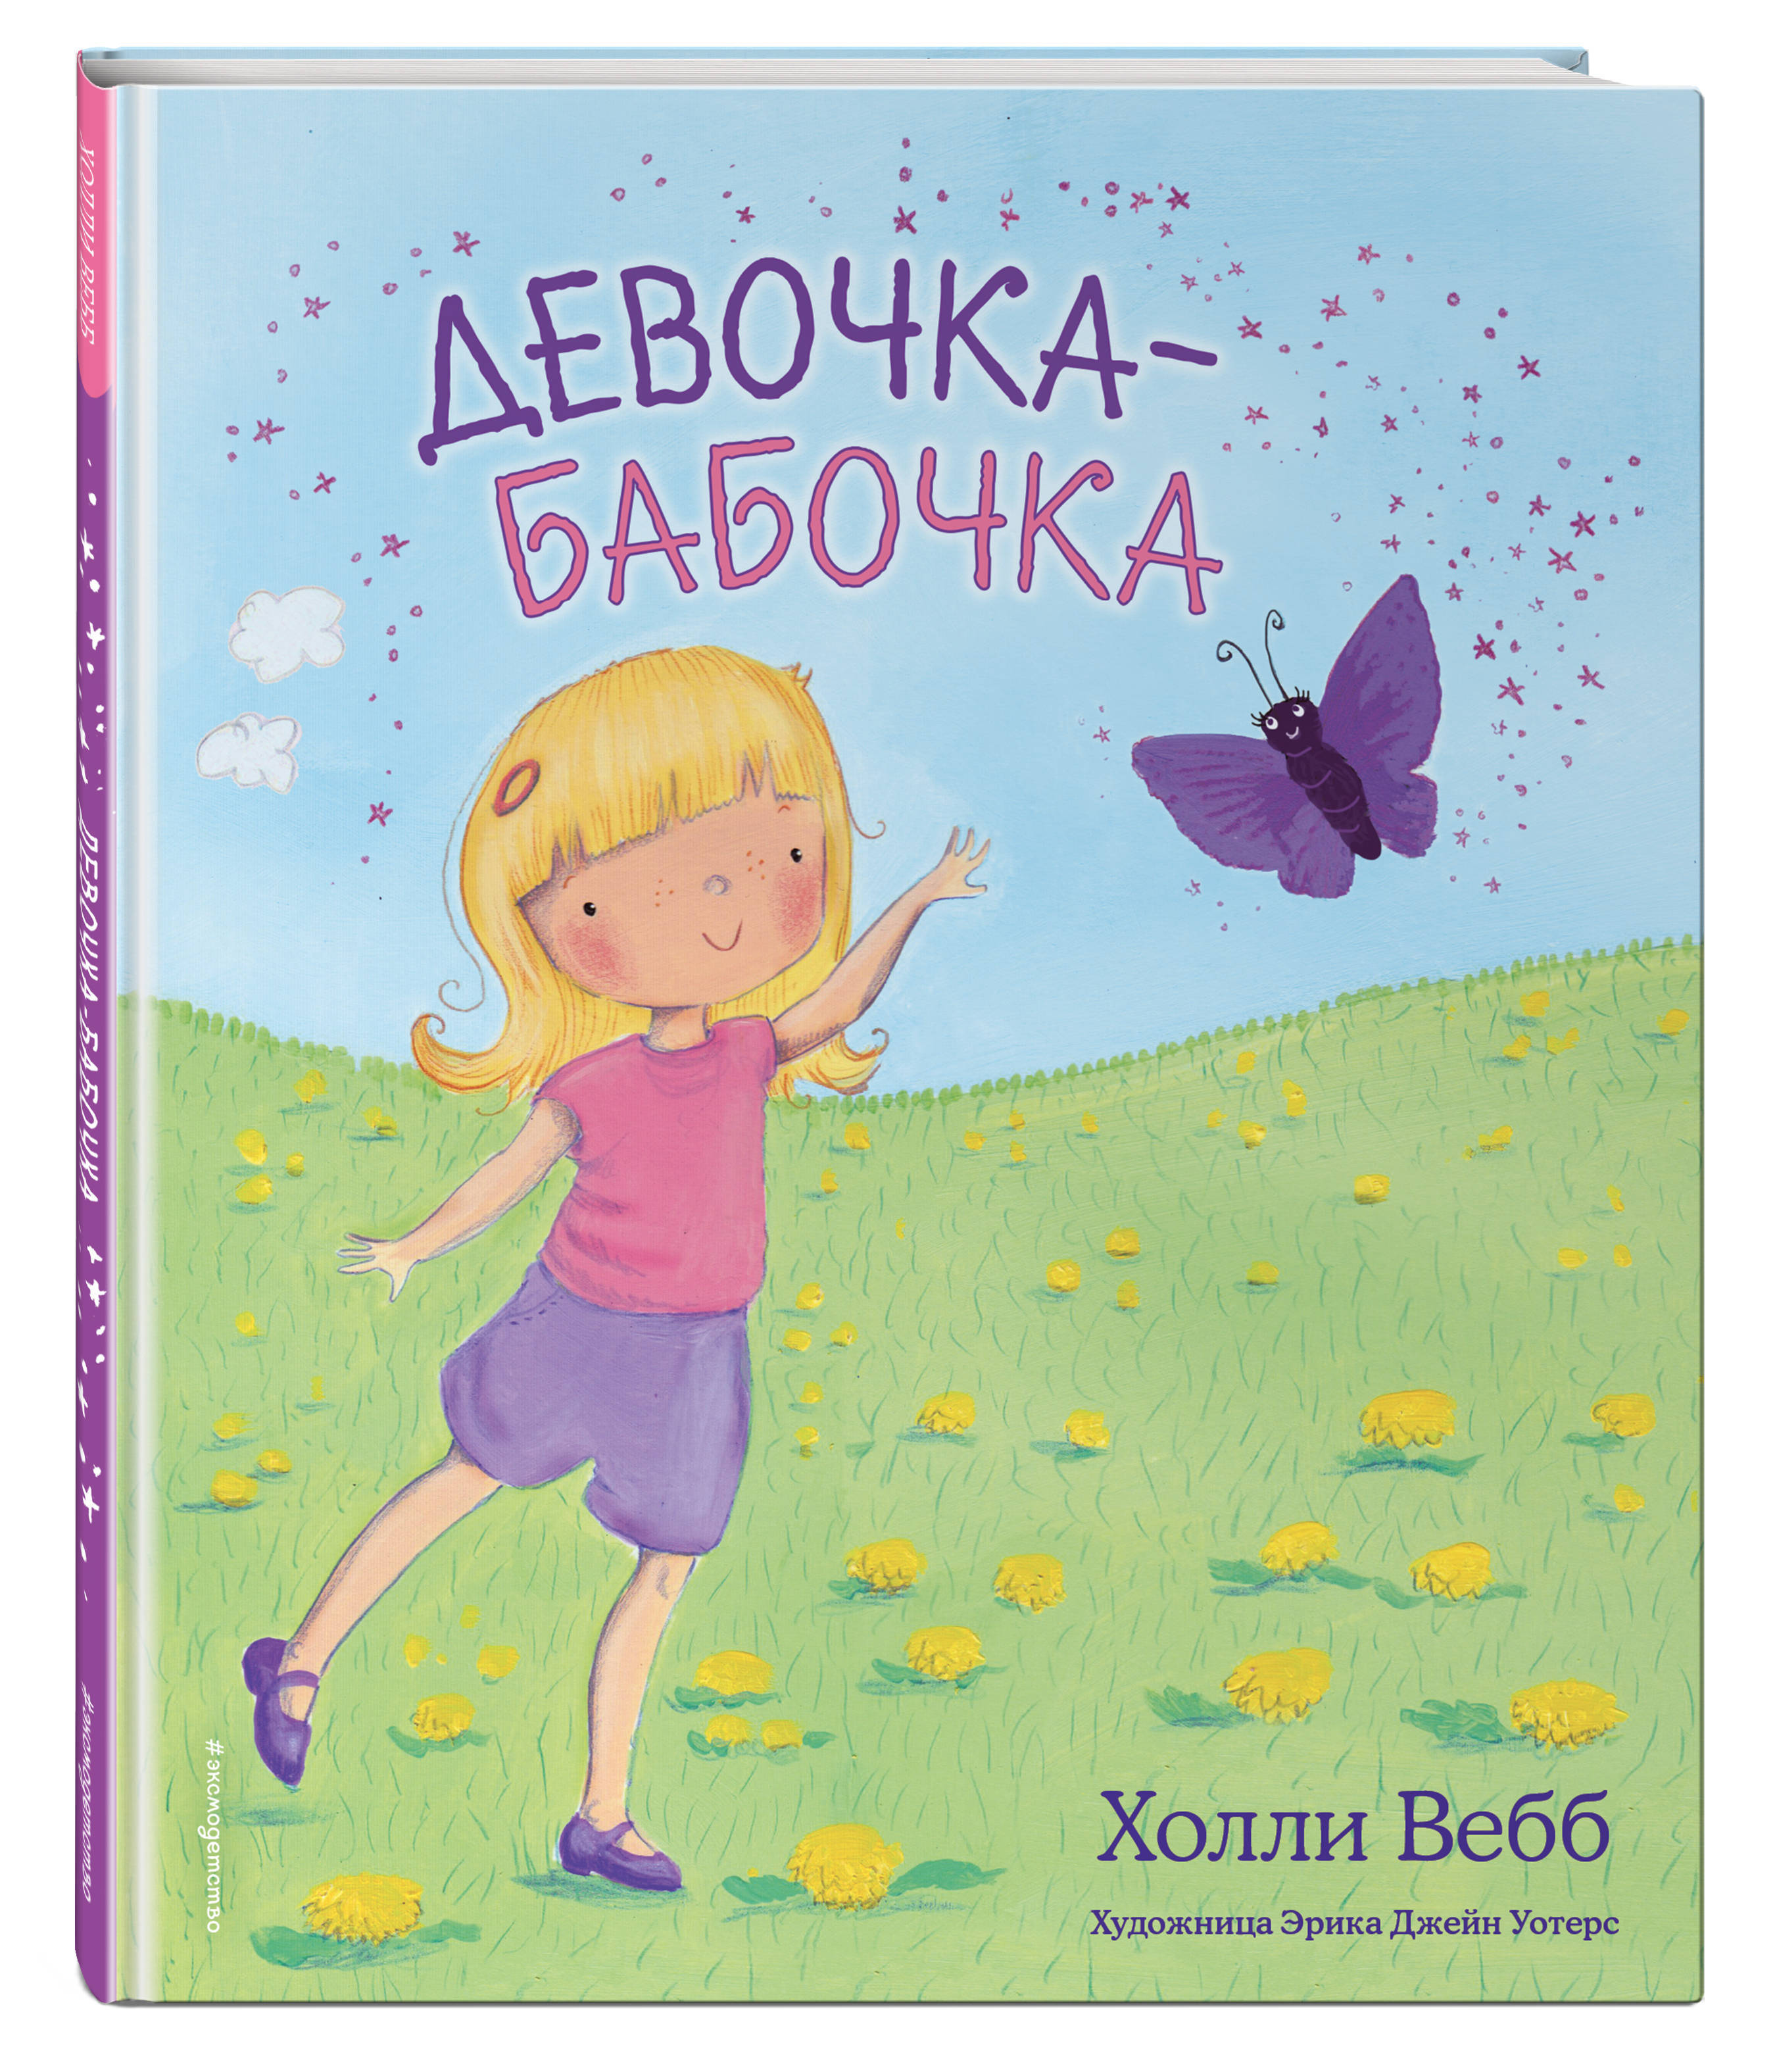 Обложка холли. Холли Вебб "девочка-бабочка". Девочка-бабочка Холли Вебб книга. Холли Вебб про девочку. Девочка с бабочками и книгой.